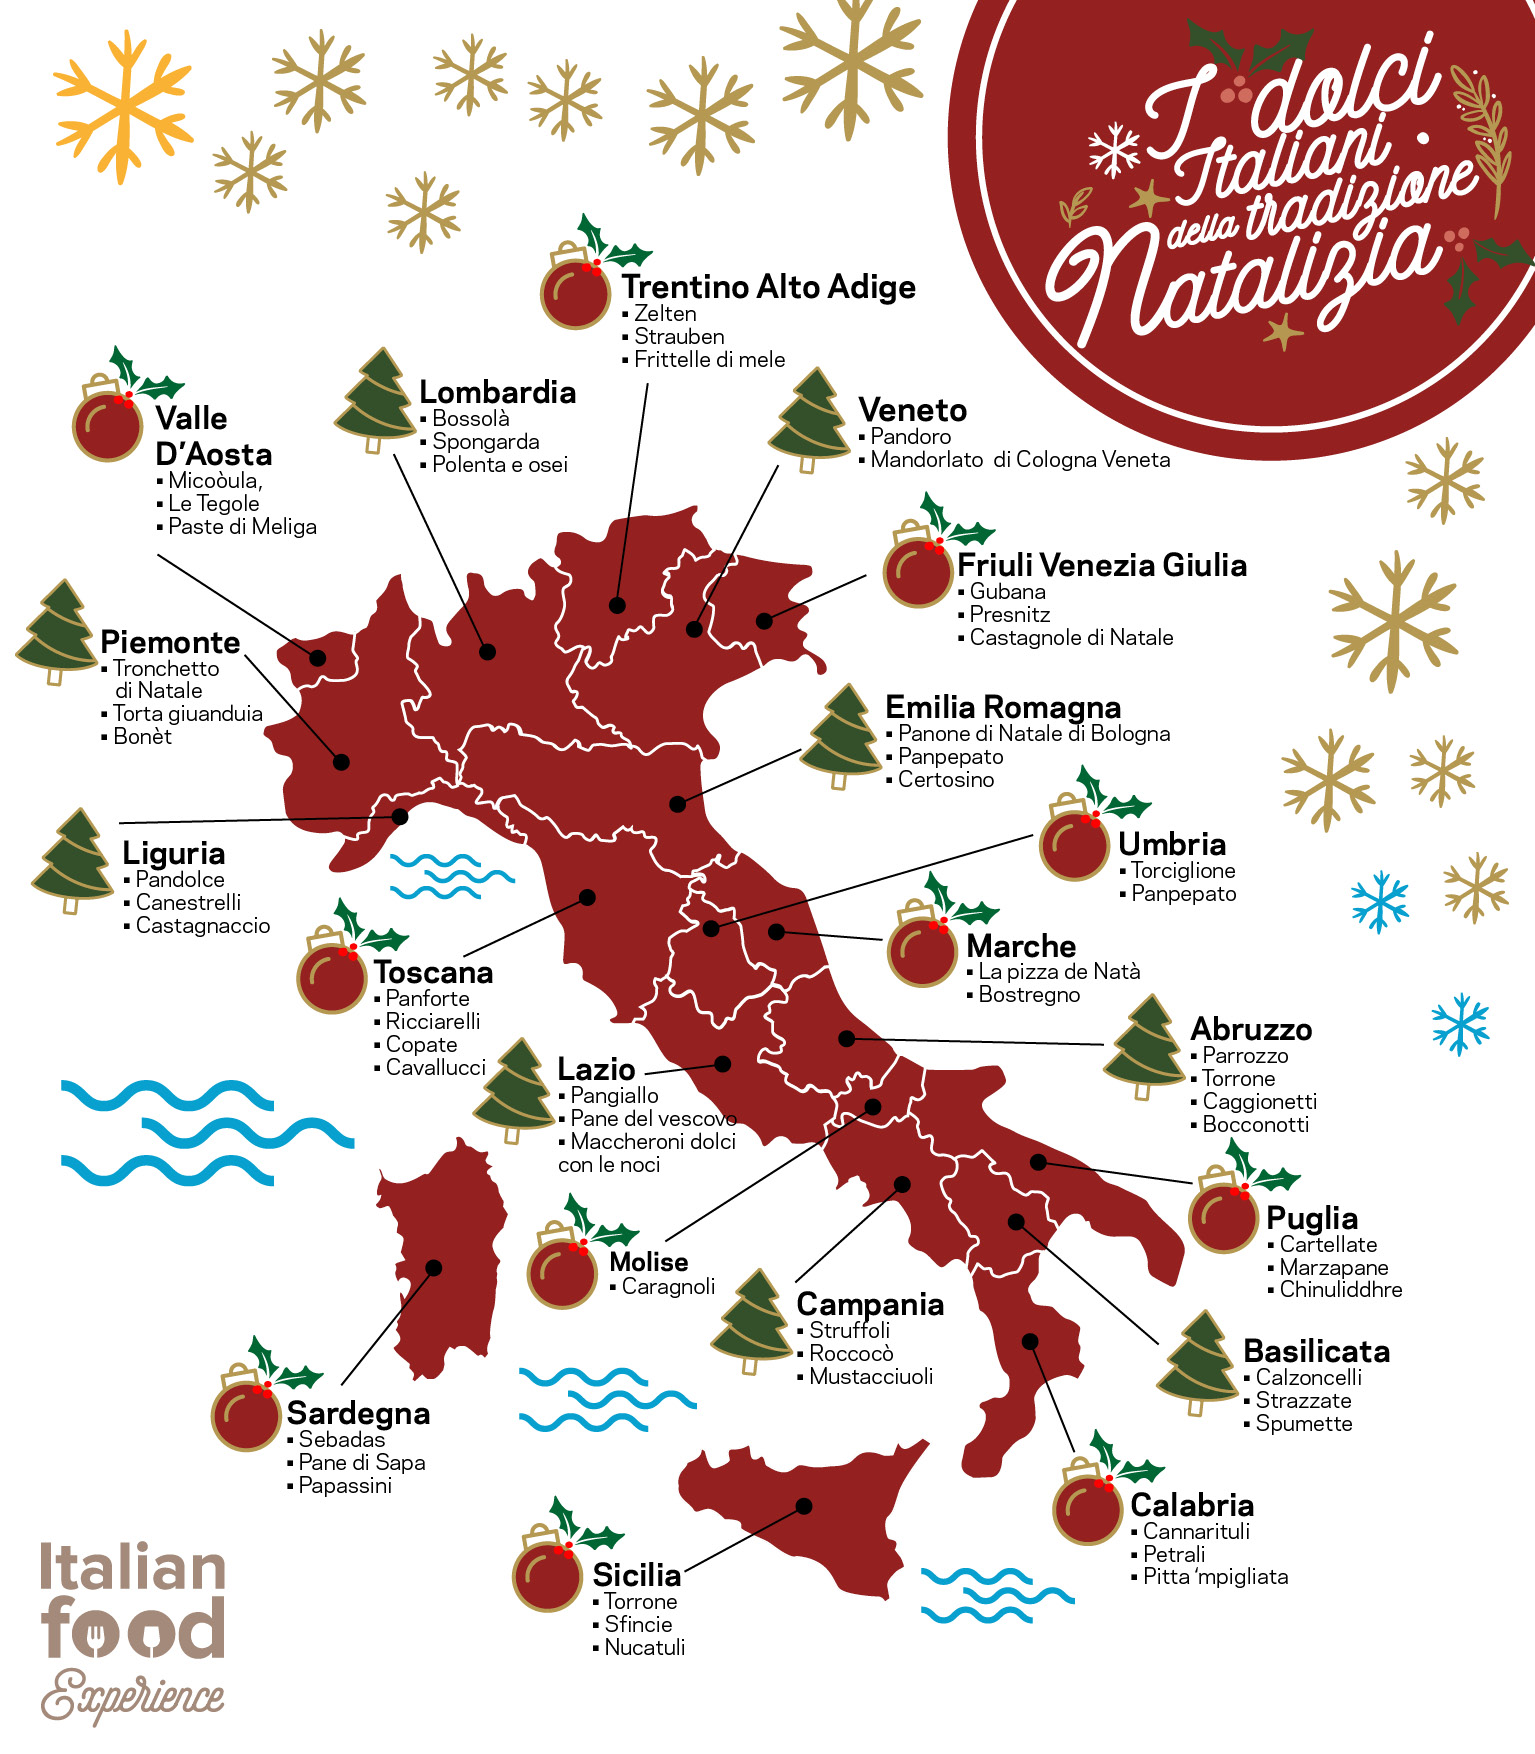 Dolci Natalizi Italia.Dolci Tipici Natalizi In Italia Regione Per Regione